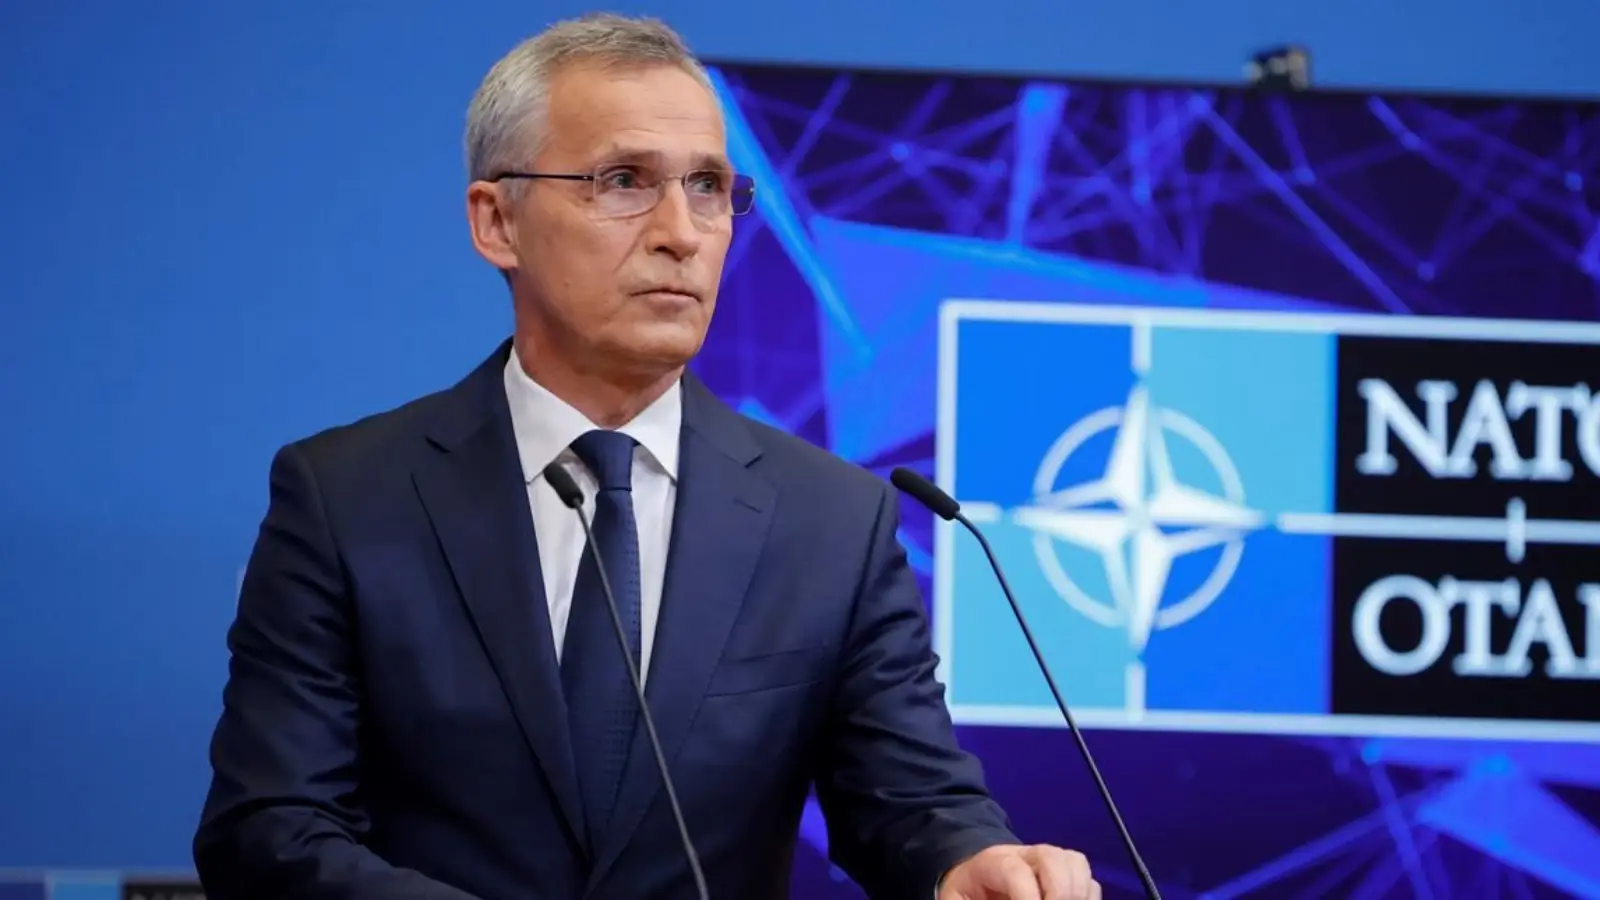 NATO sender bekymrende meddelelse om krig, inklusive Rumænien